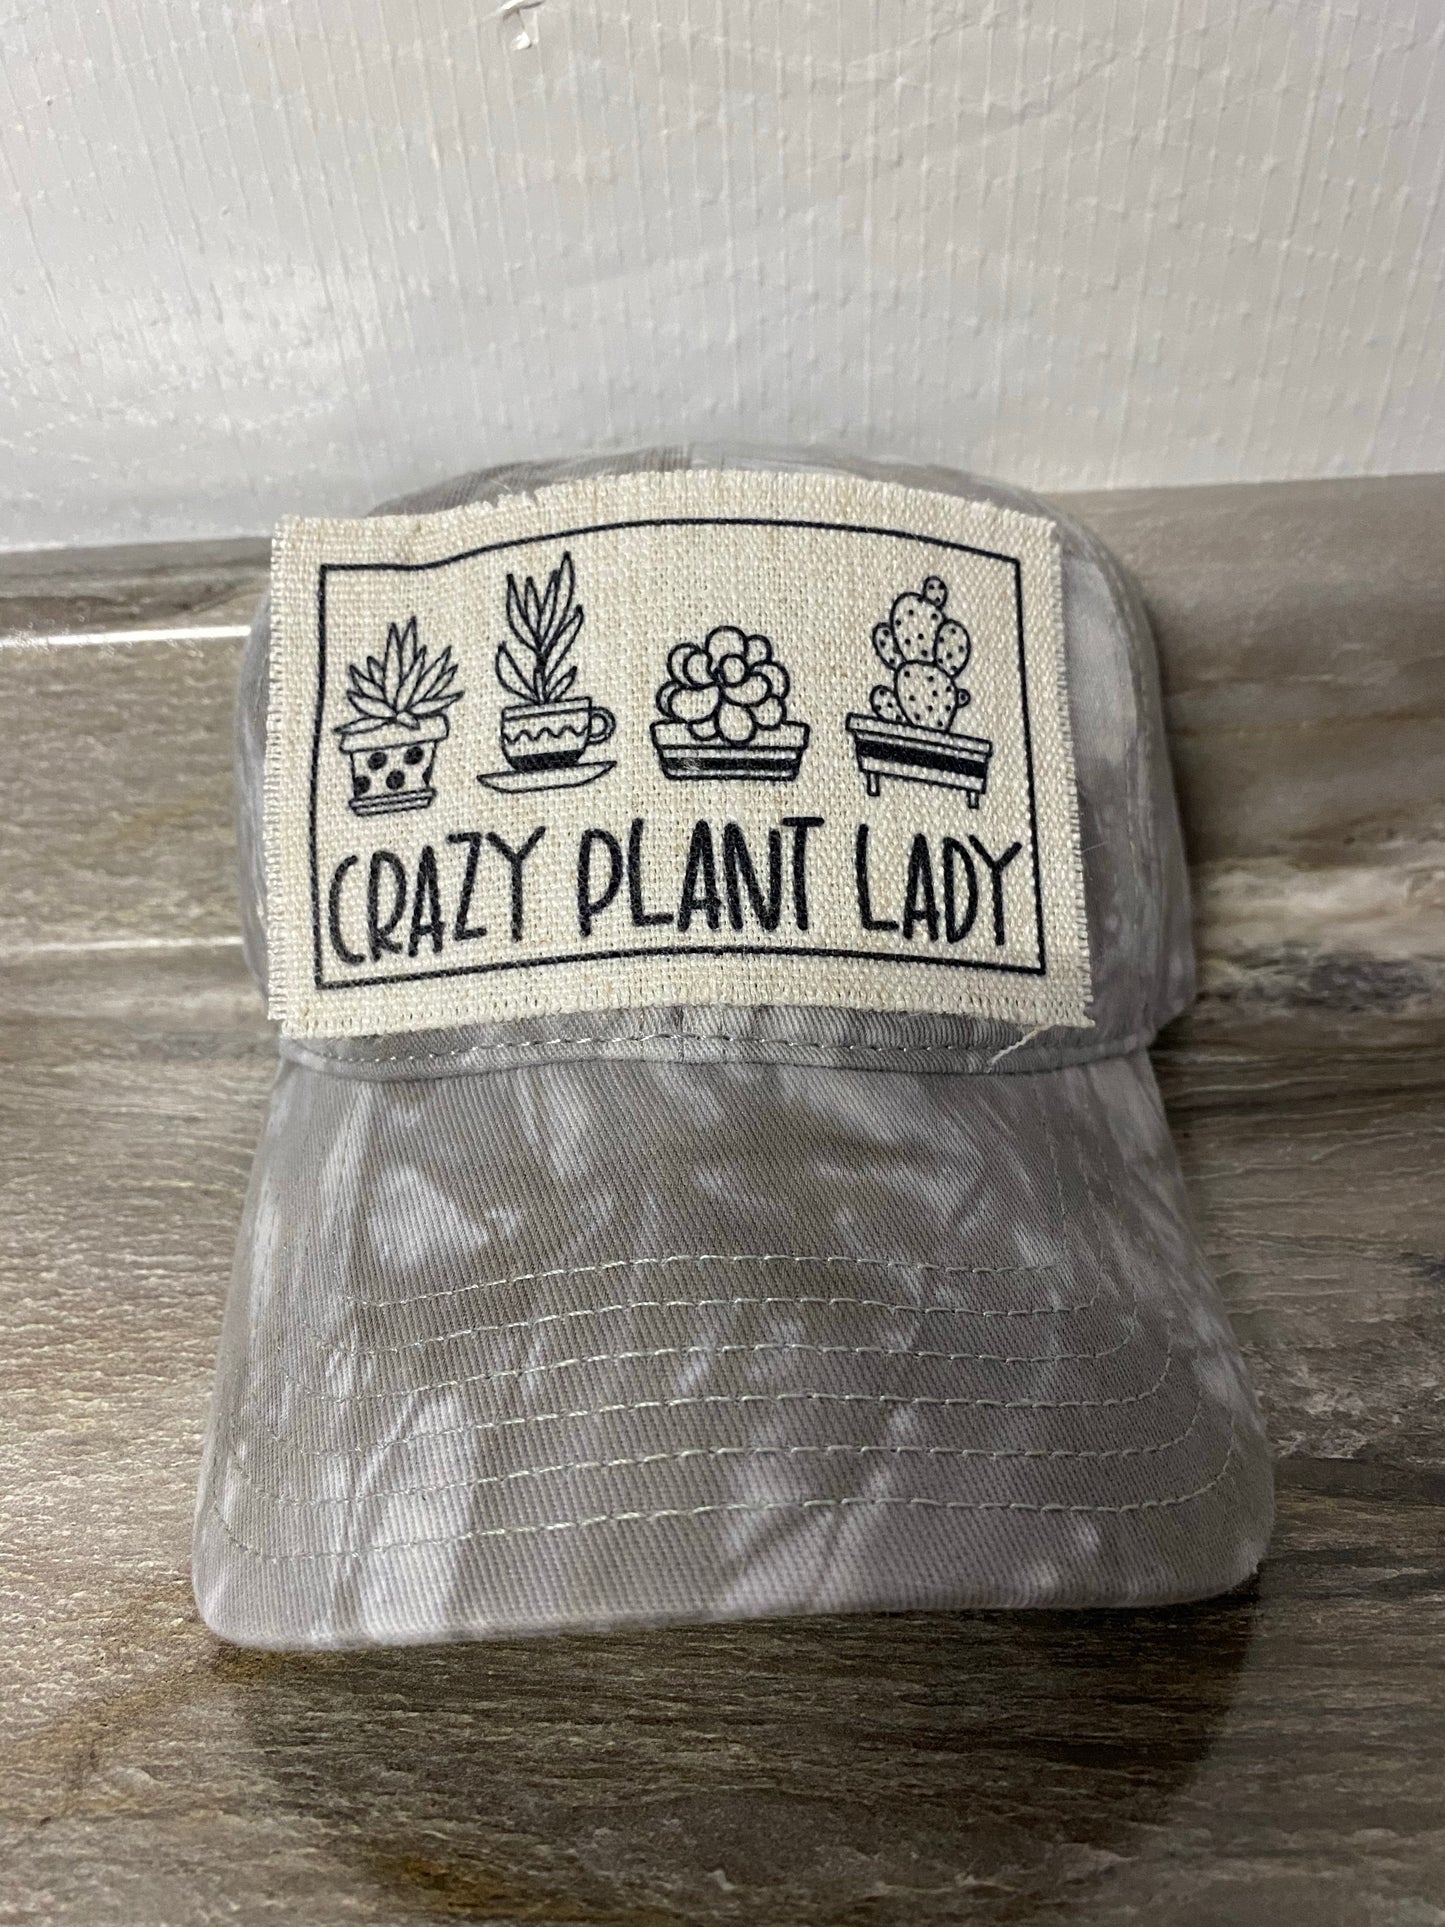 Crazy Plant Lady Hat Patch